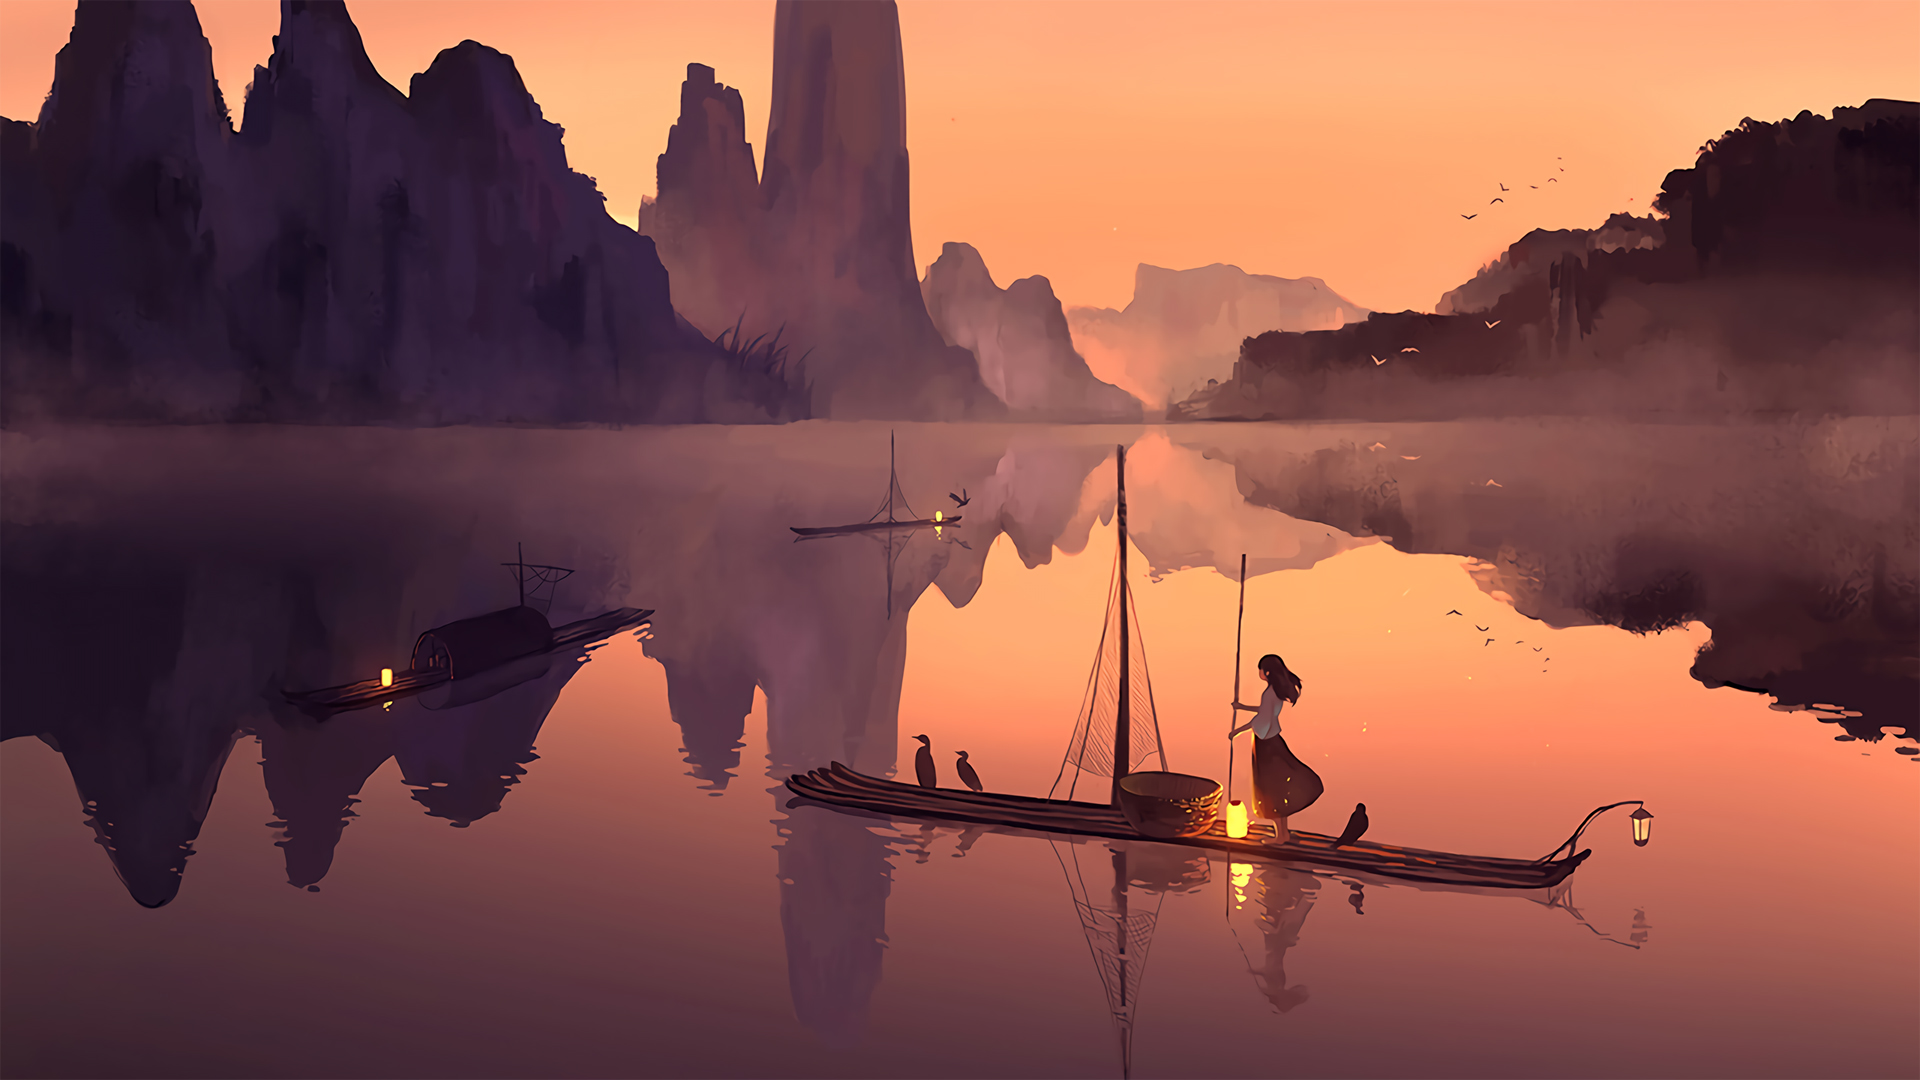 落日下 山水湖泊中 一个划着竹排的渔家少女唯美动漫手绘壁纸图片 黄昏